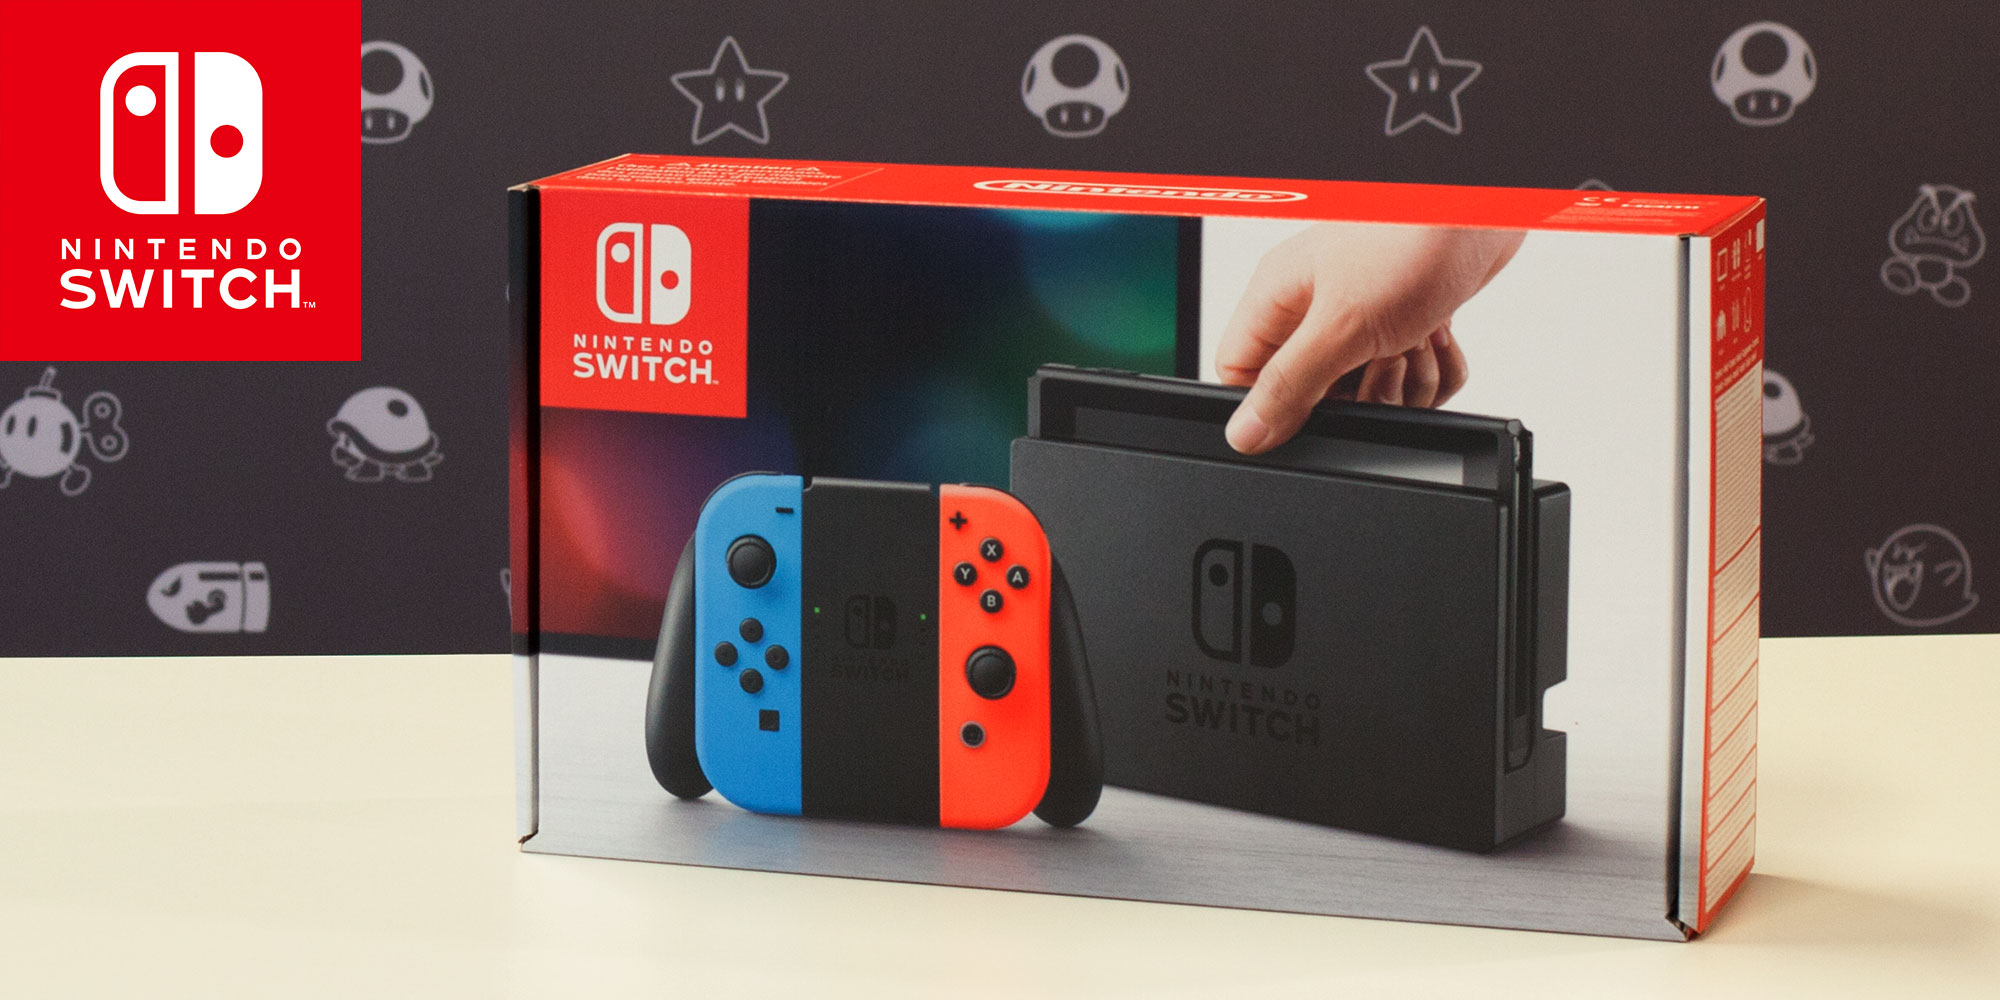 Scopri i contenuti della confezione di Nintendo Switch con Satoru Shibata!